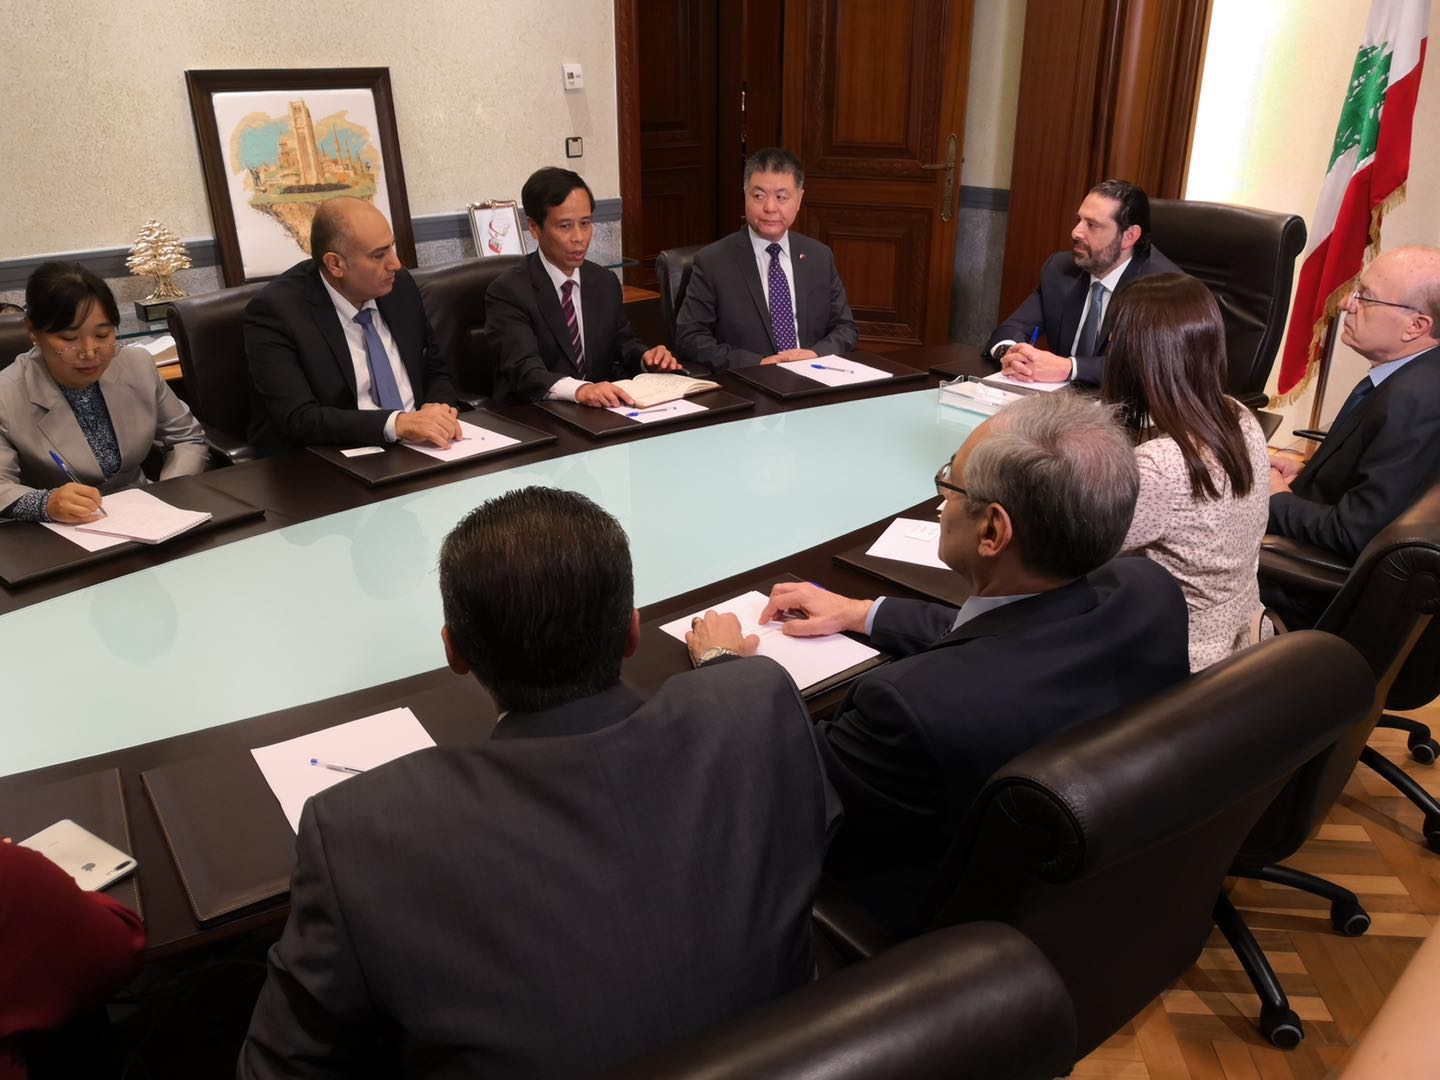 H.E, Mr. Hariri met the delegation in Beirut.